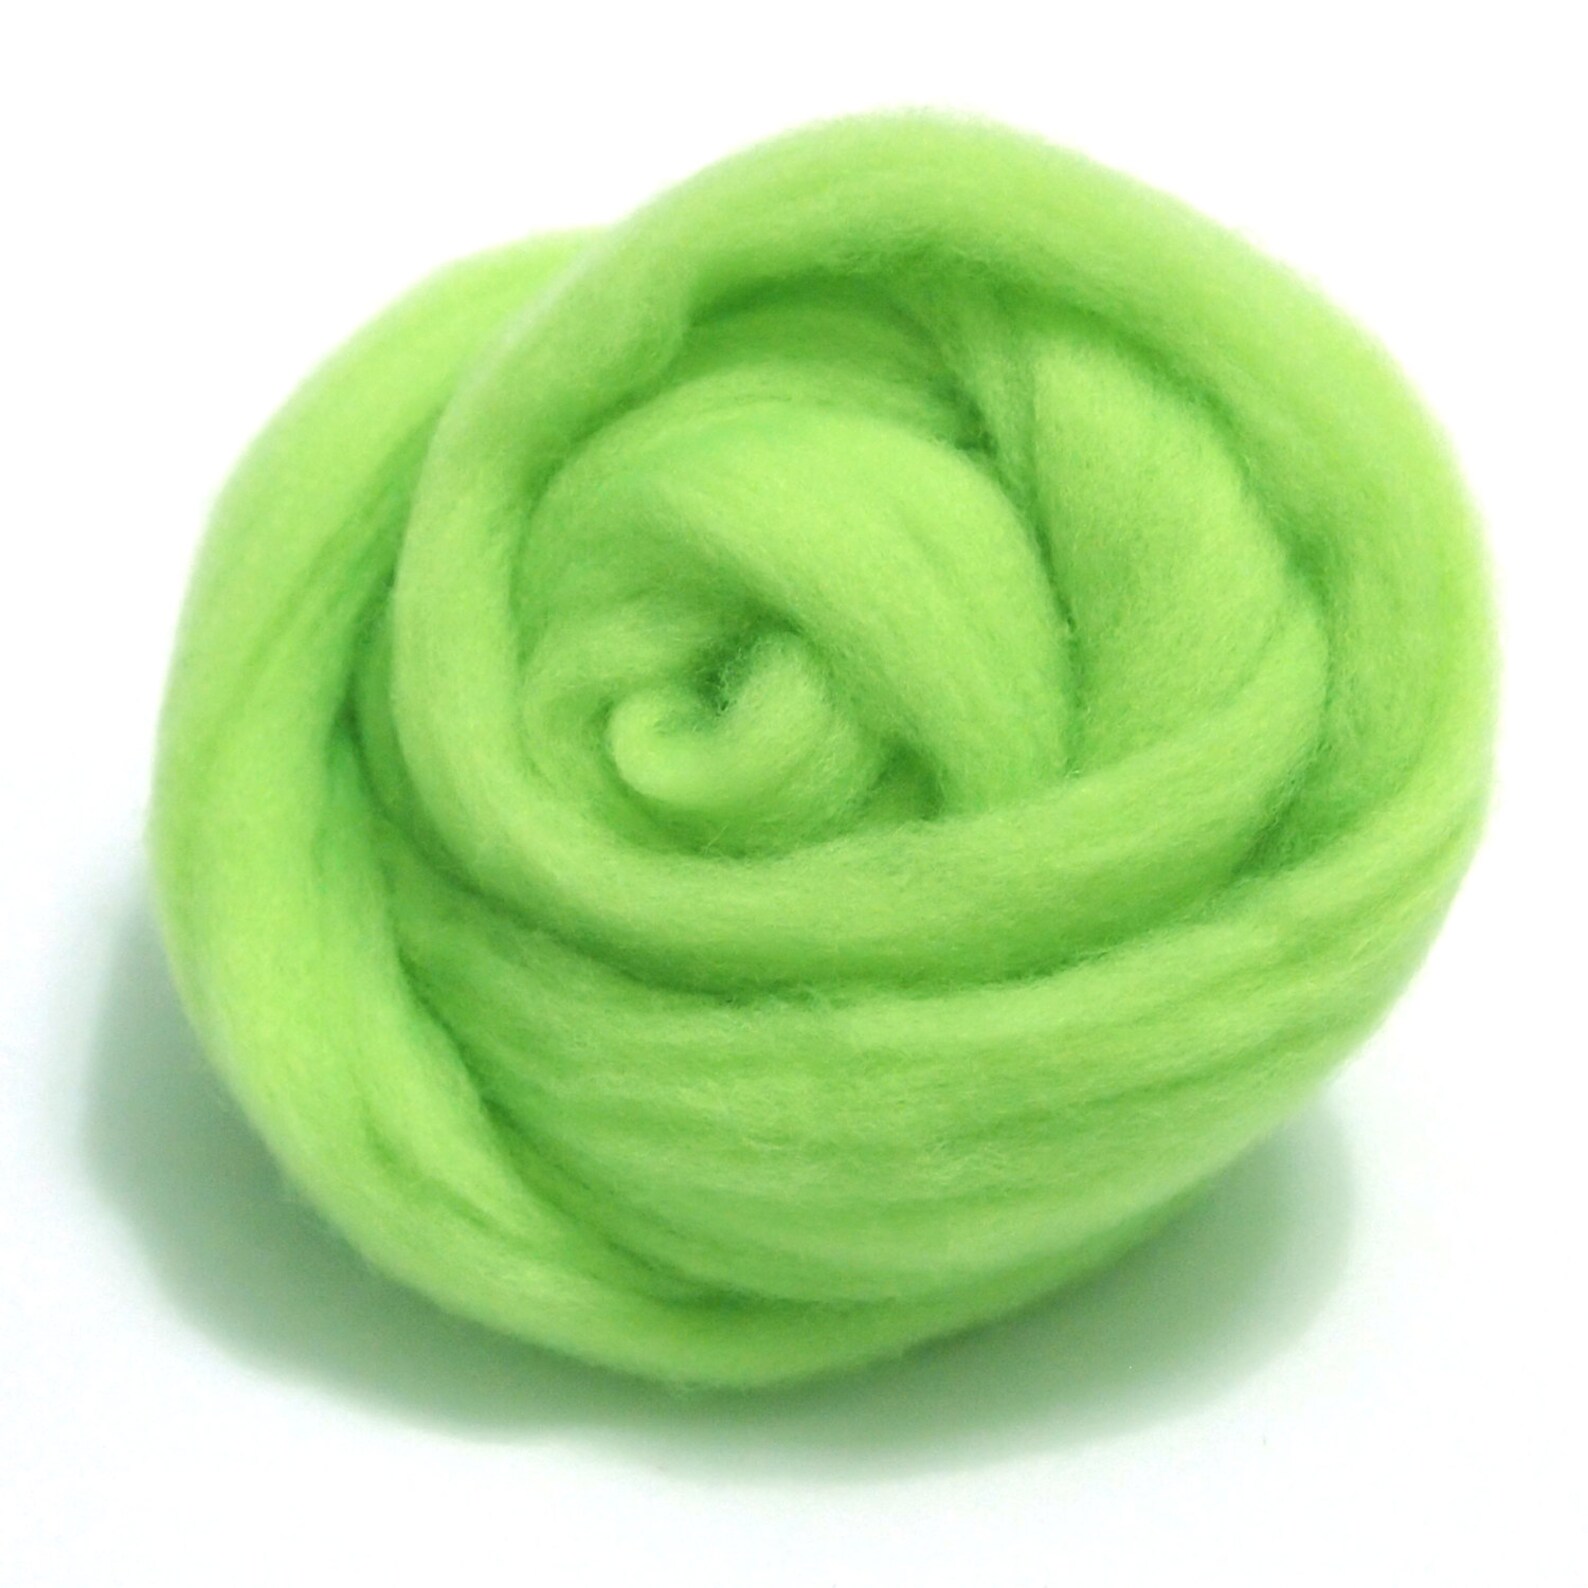 Лесная шерсть. Валяние зеленое яблоко. Предмет из шерсти зеленого цвета. Игрушки для игрушки шорты для валяния маленькие и легкие.